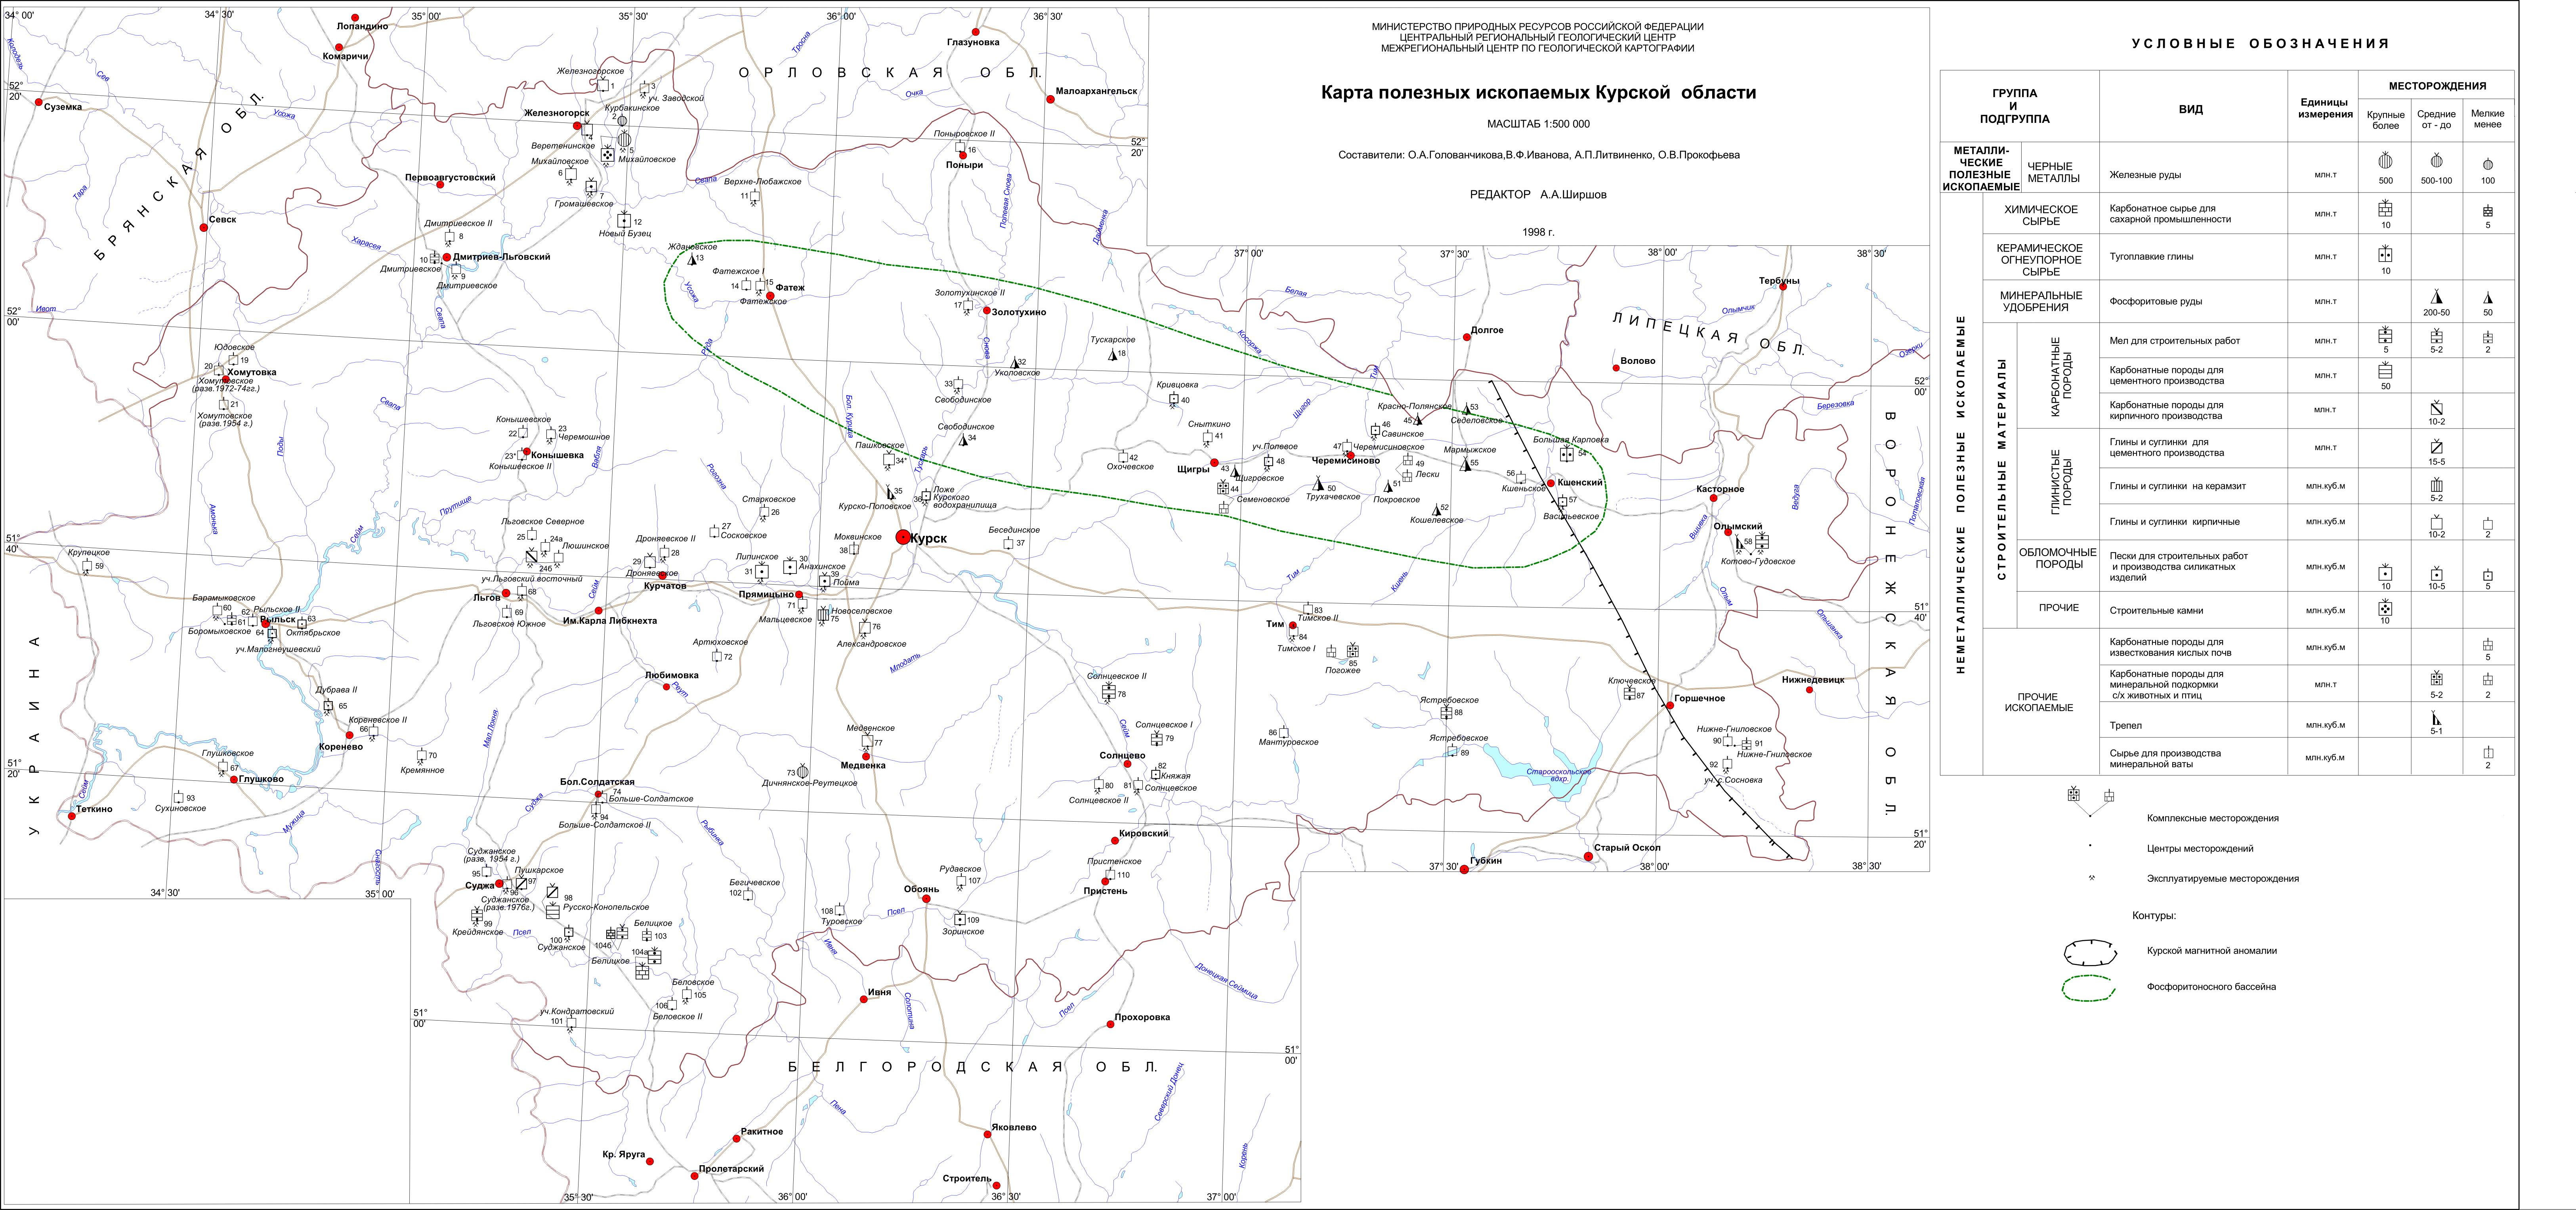 Карта полезных ископаемых Курской области